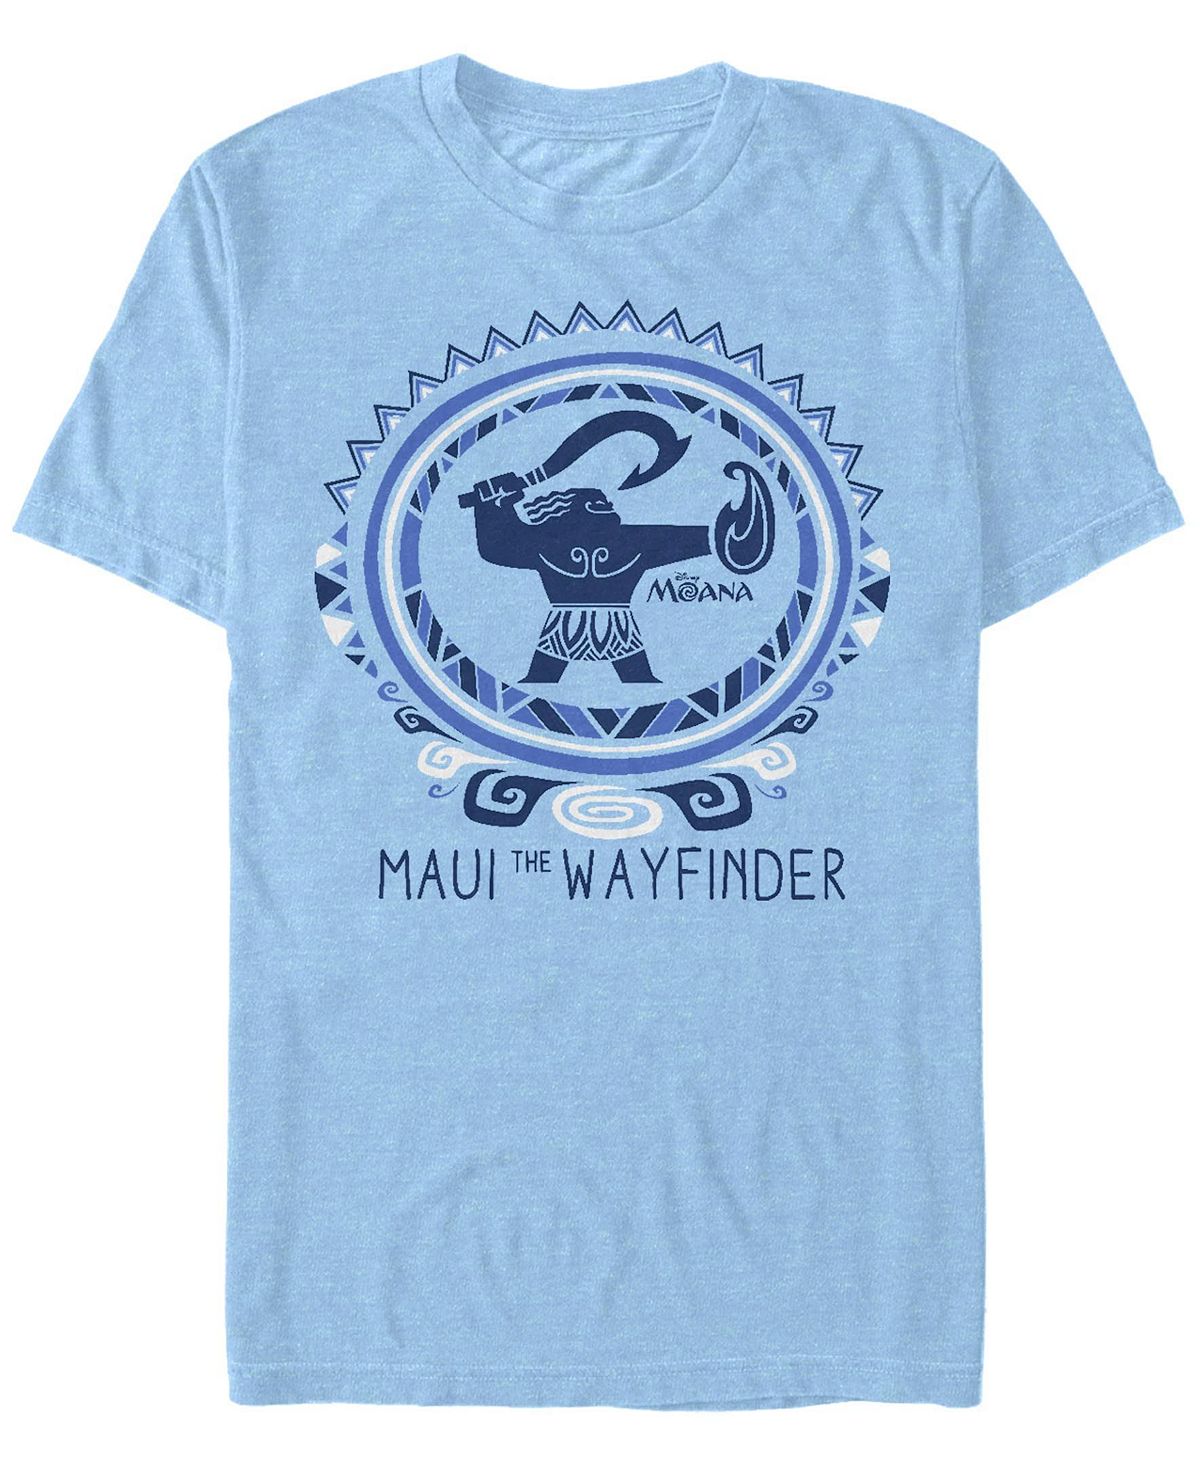 Мужская футболка с круглым вырезом с короткими рукавами maui the wayfinder Fifth Sun, светло-синий